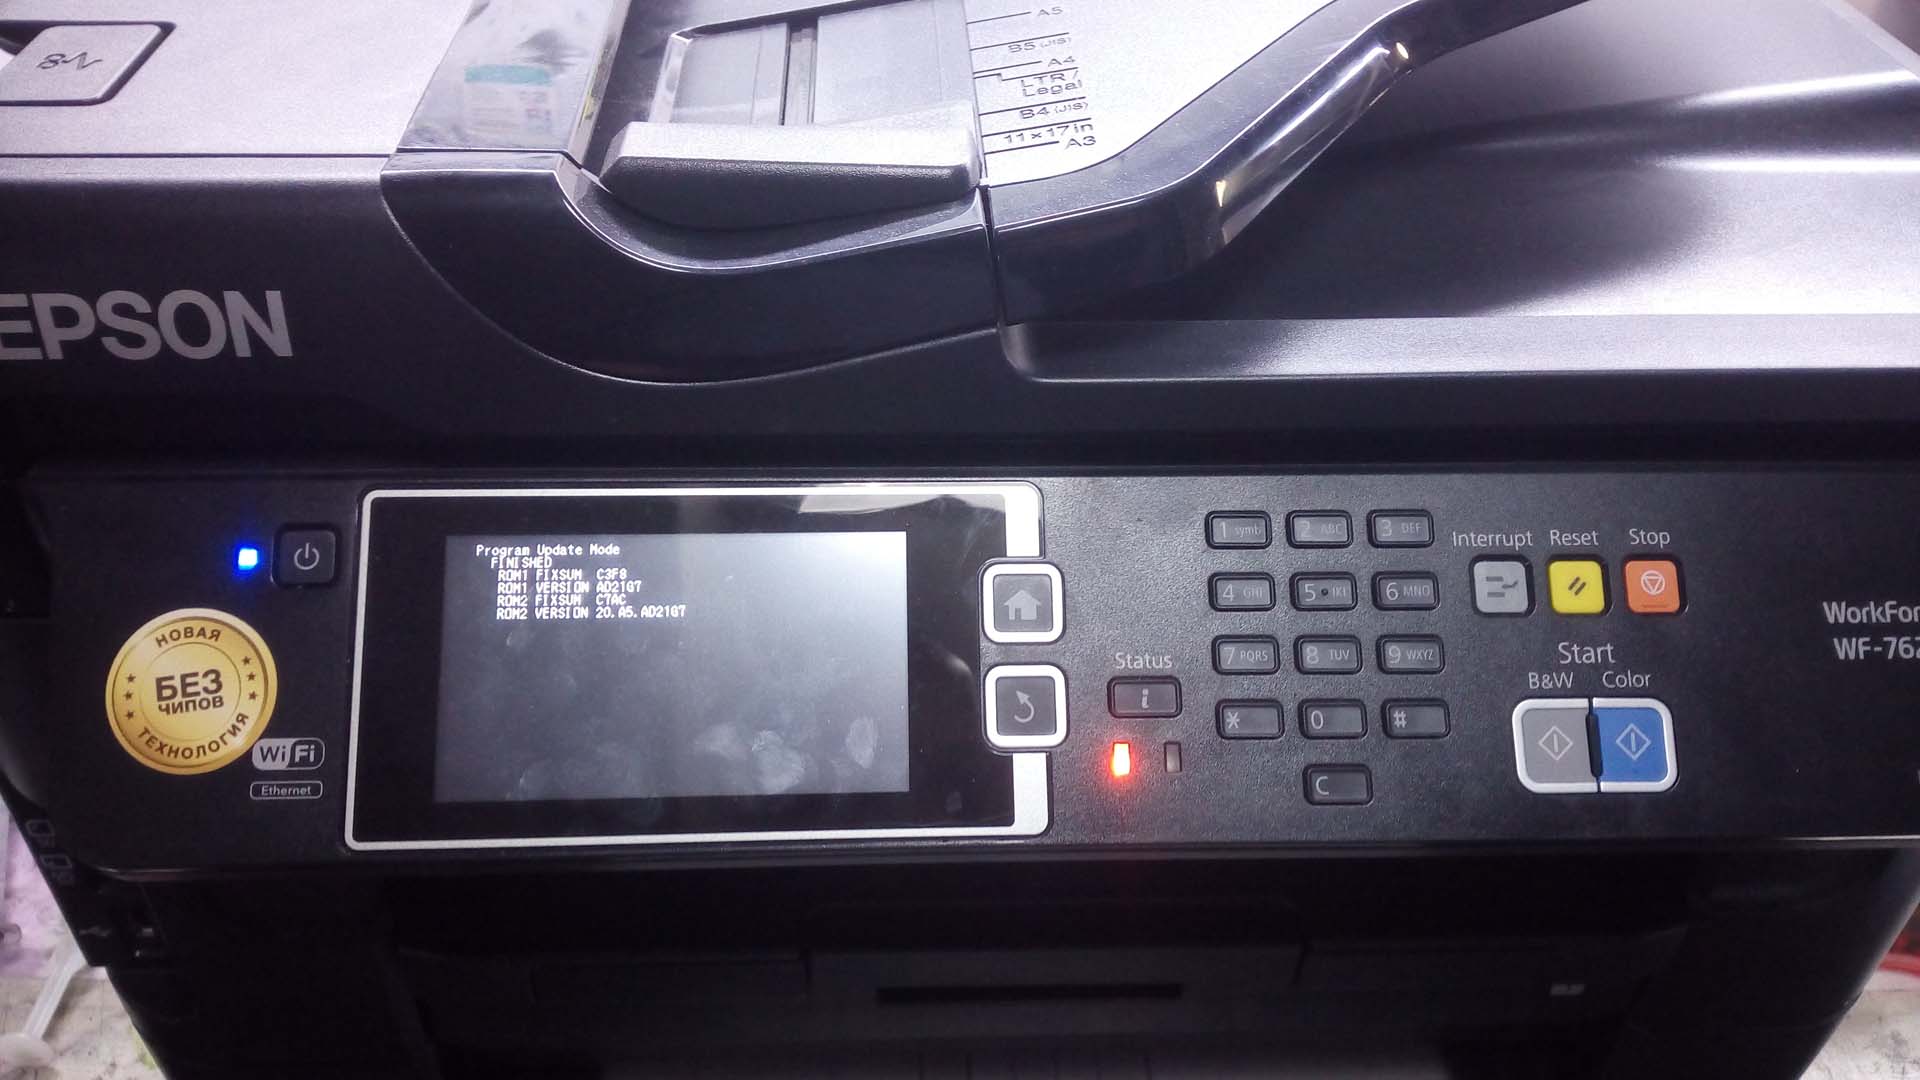 Прошивка в безчиповый принтер Epson WF-7620